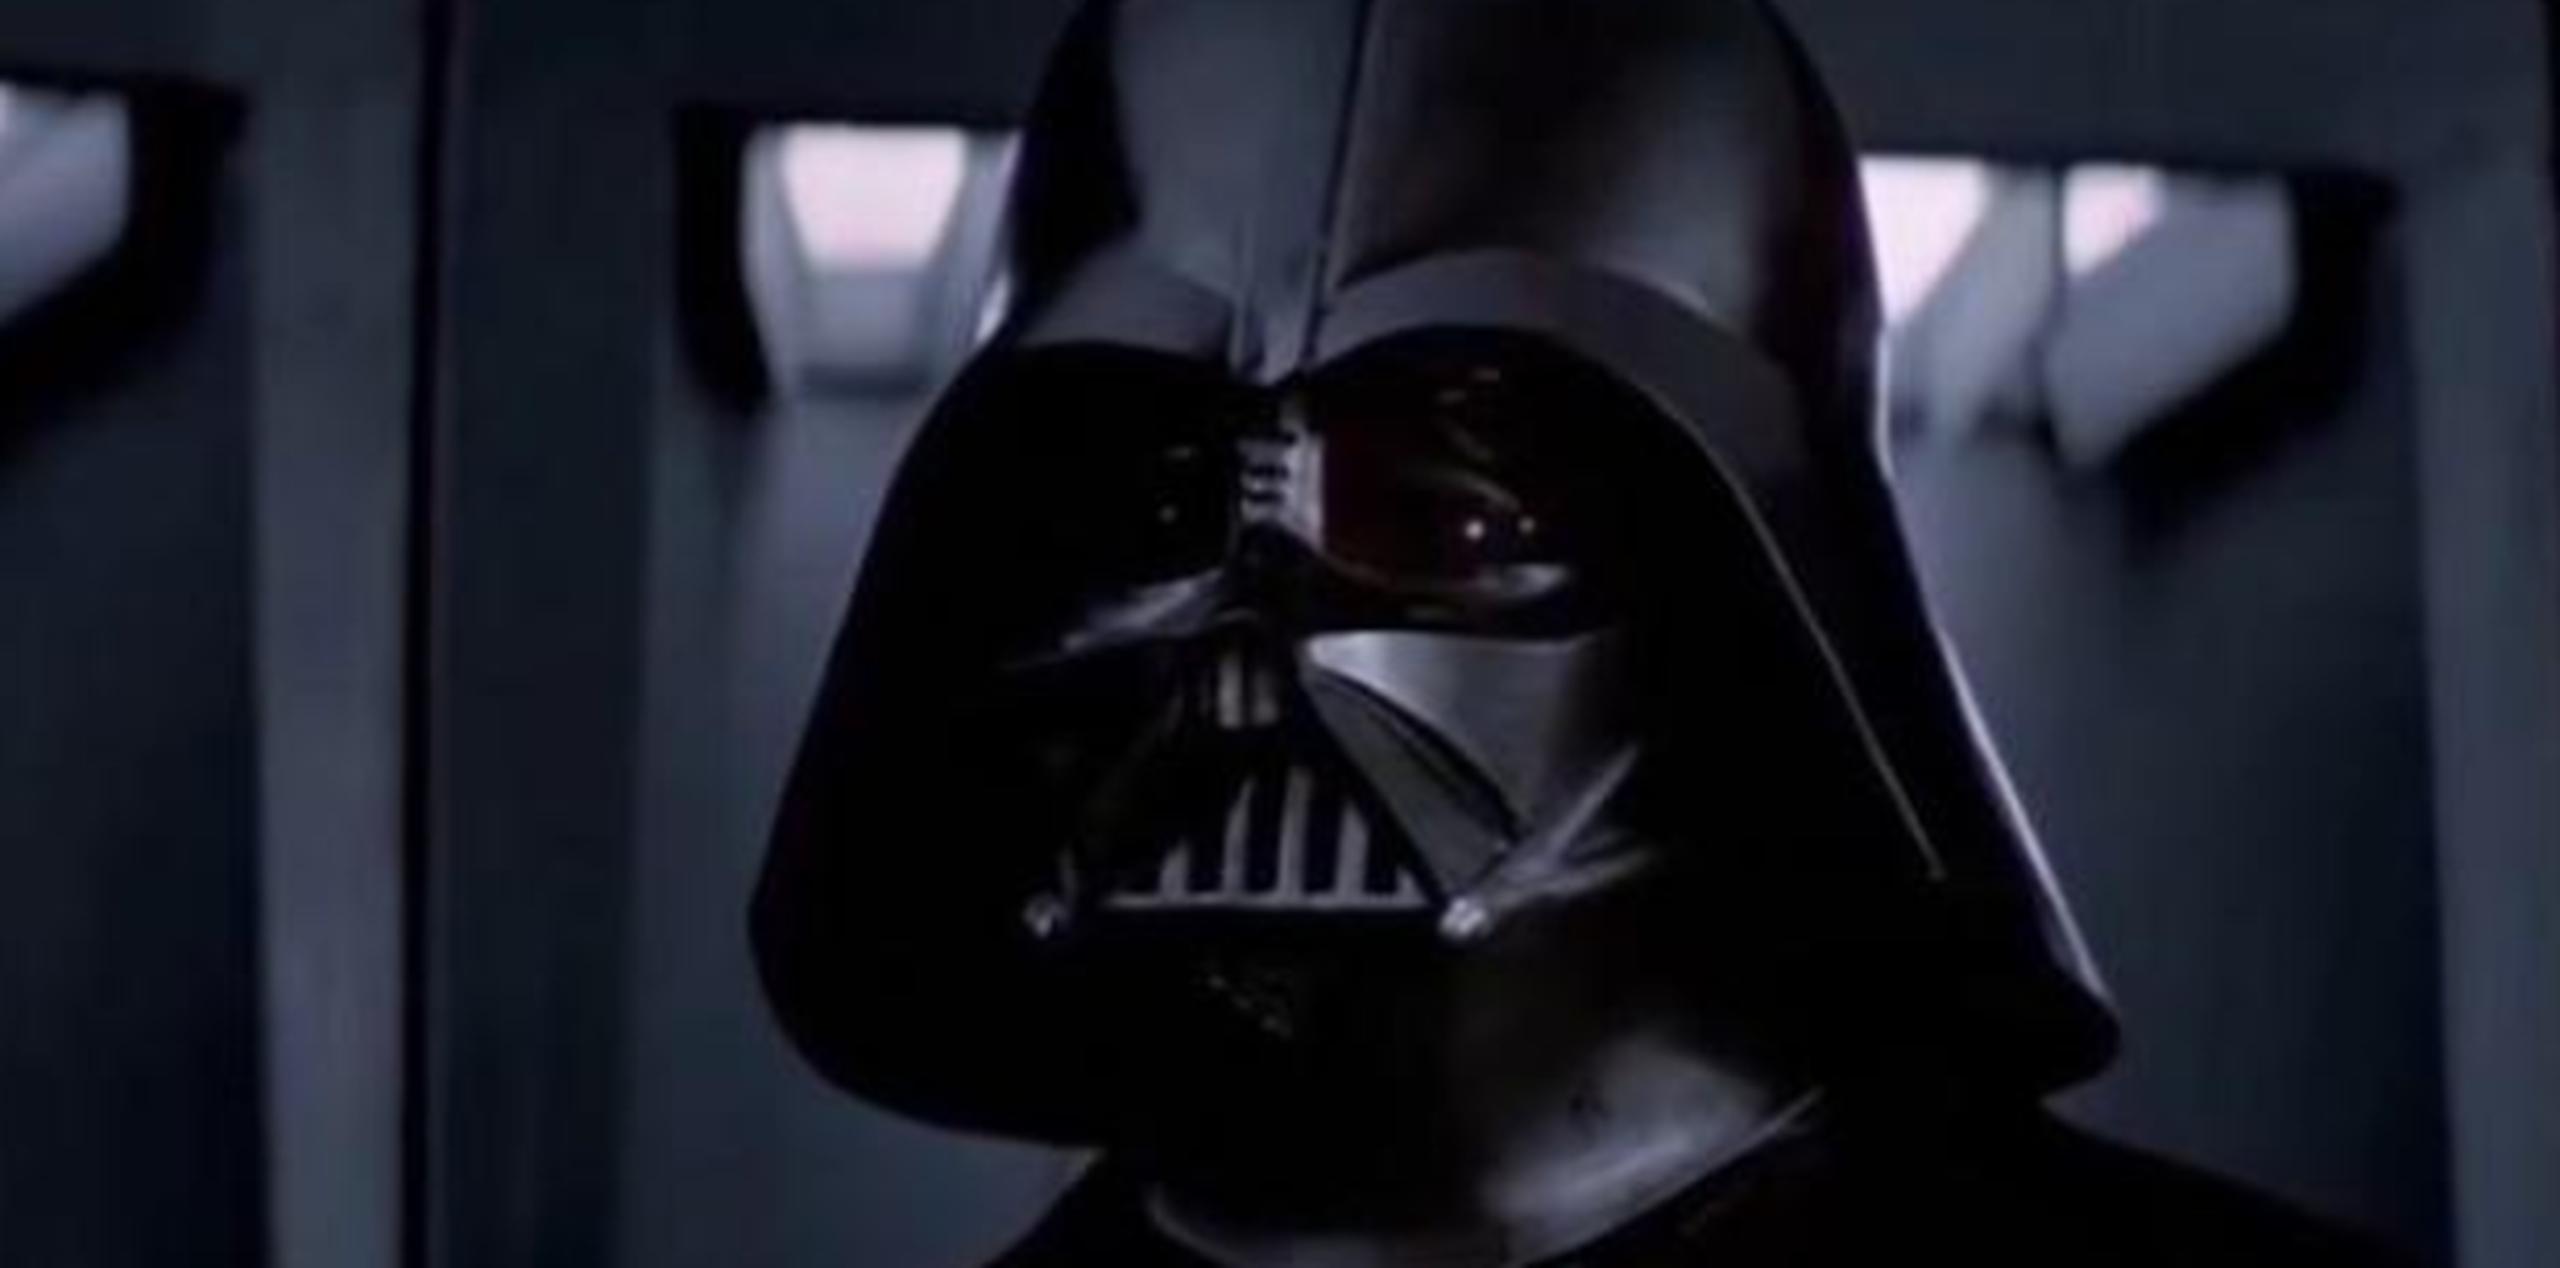 La película, que cuenta con la memorable reaparición de Darth Vader,  de Disney y Lucasfilm en casi 40 días logró $512 millones en la taquilla estadounidense y $499 millones en la internacional. (Archivo)